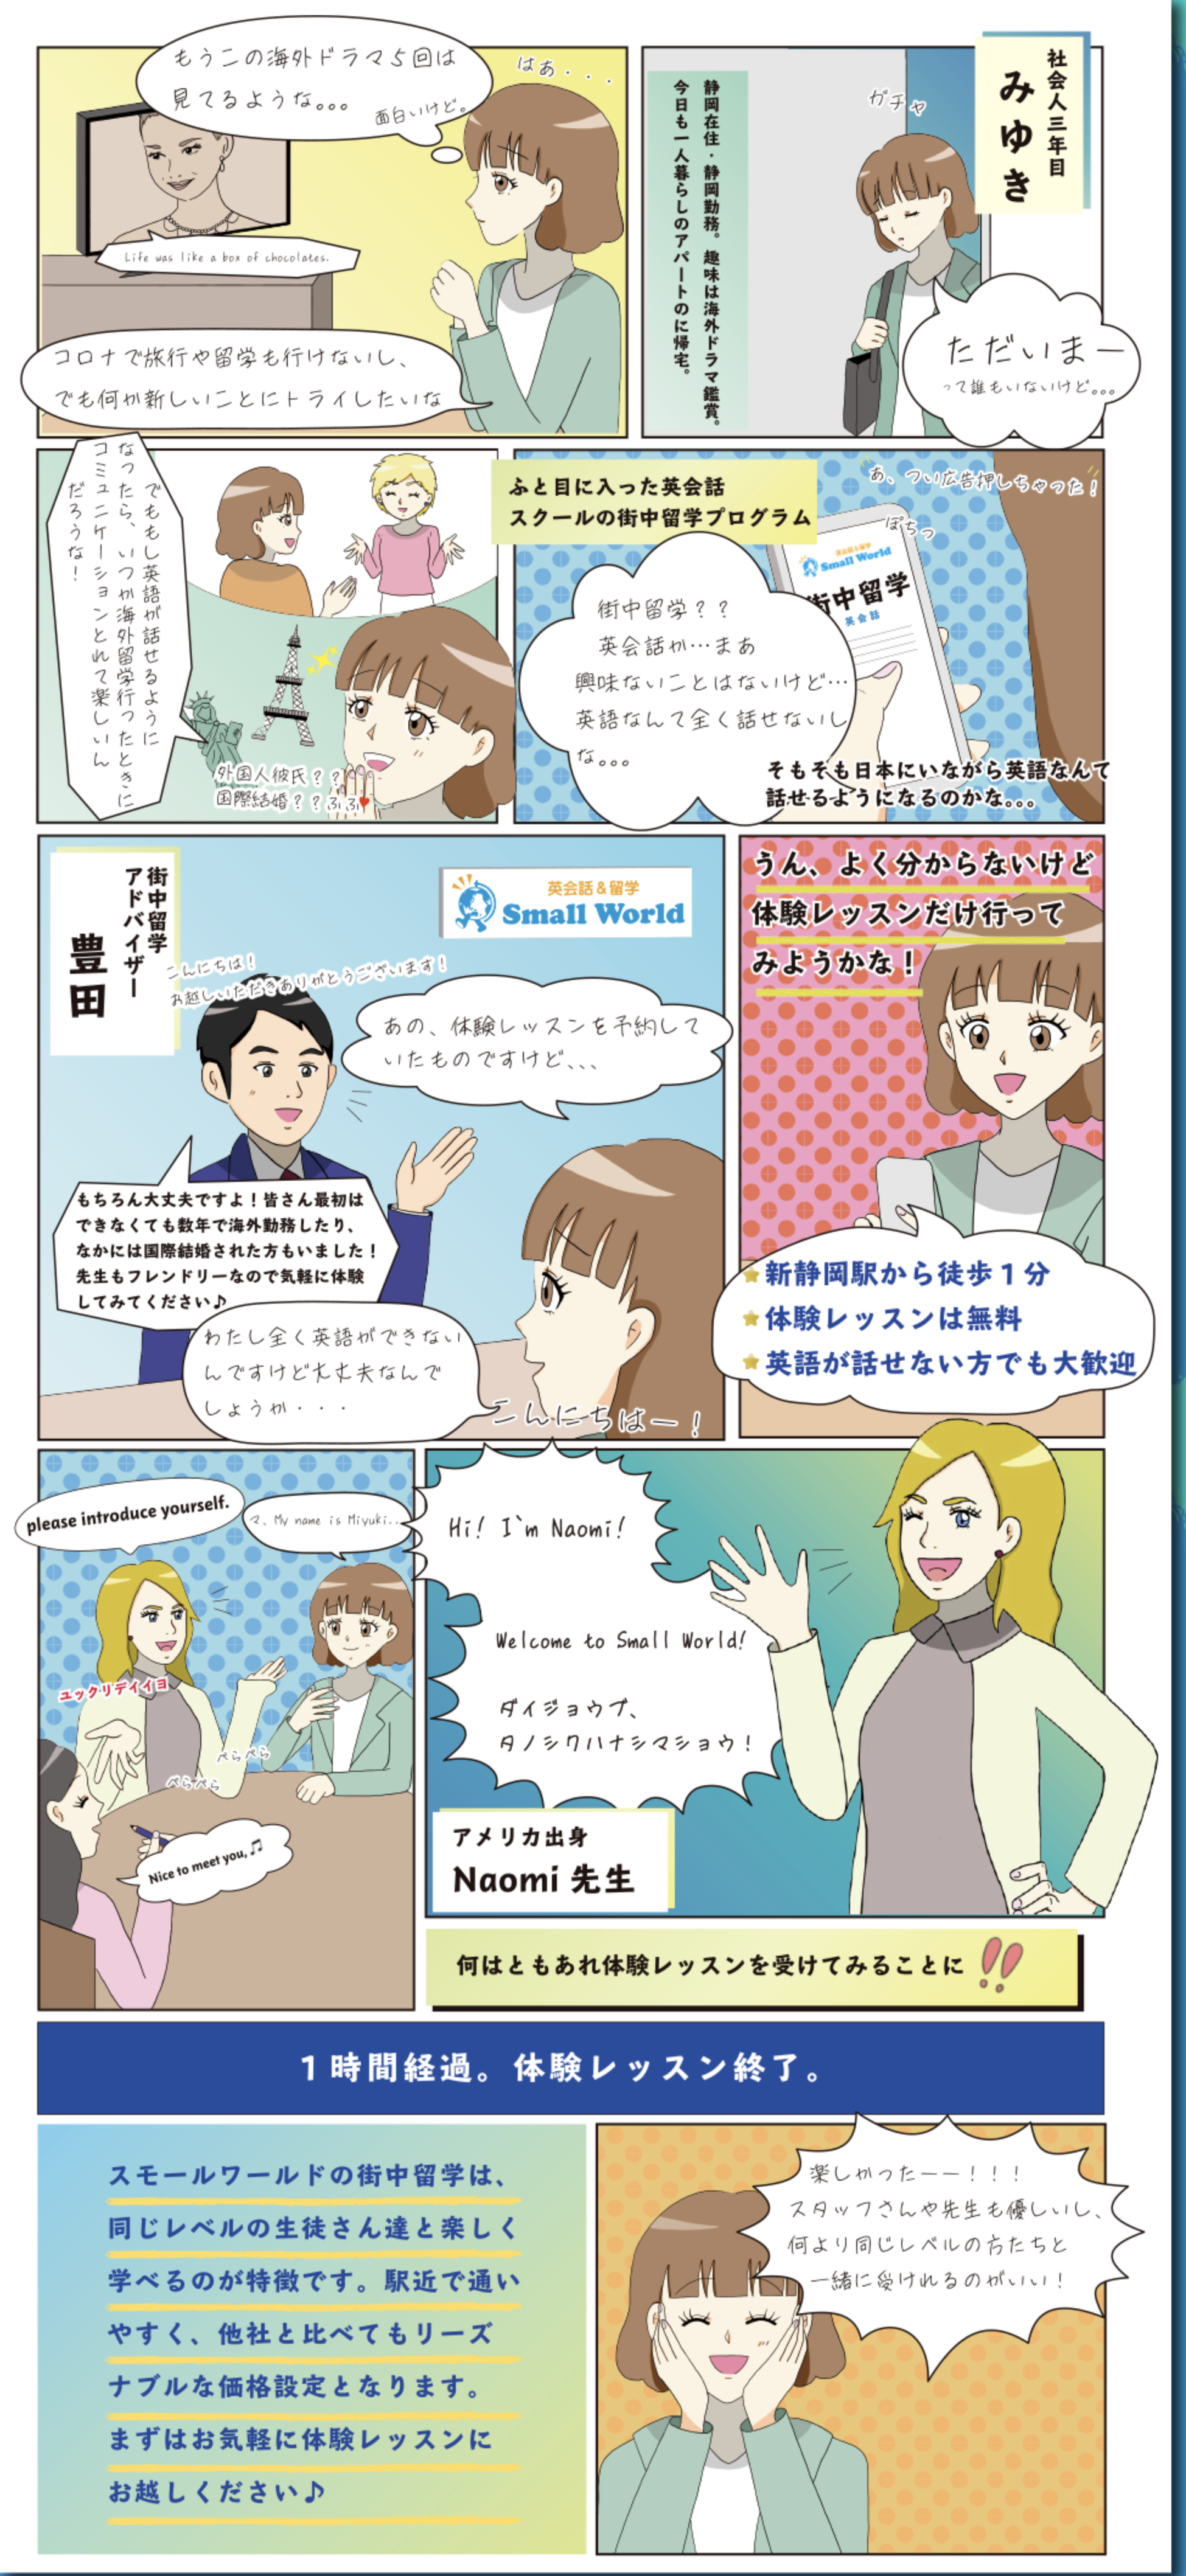 静岡で短期集中で英会話レッスンを受けられる街中留学を漫画で説明しています。